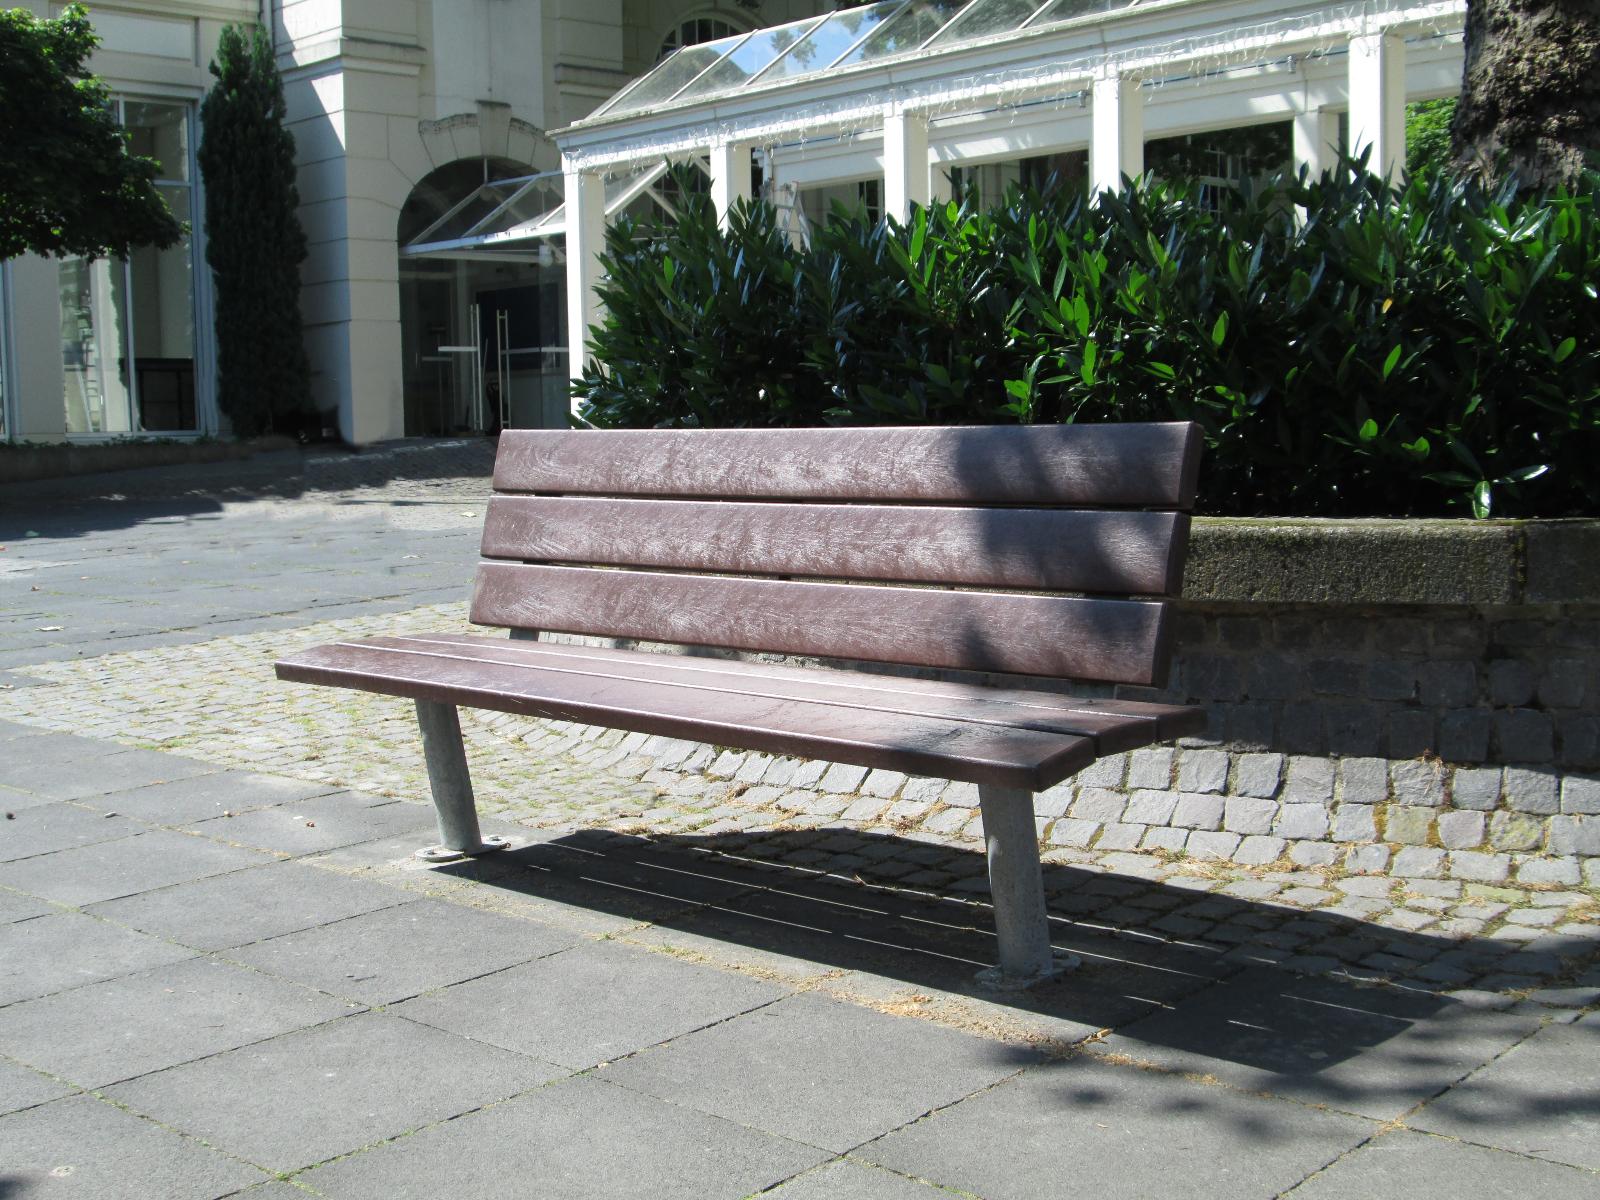 Sapo bench